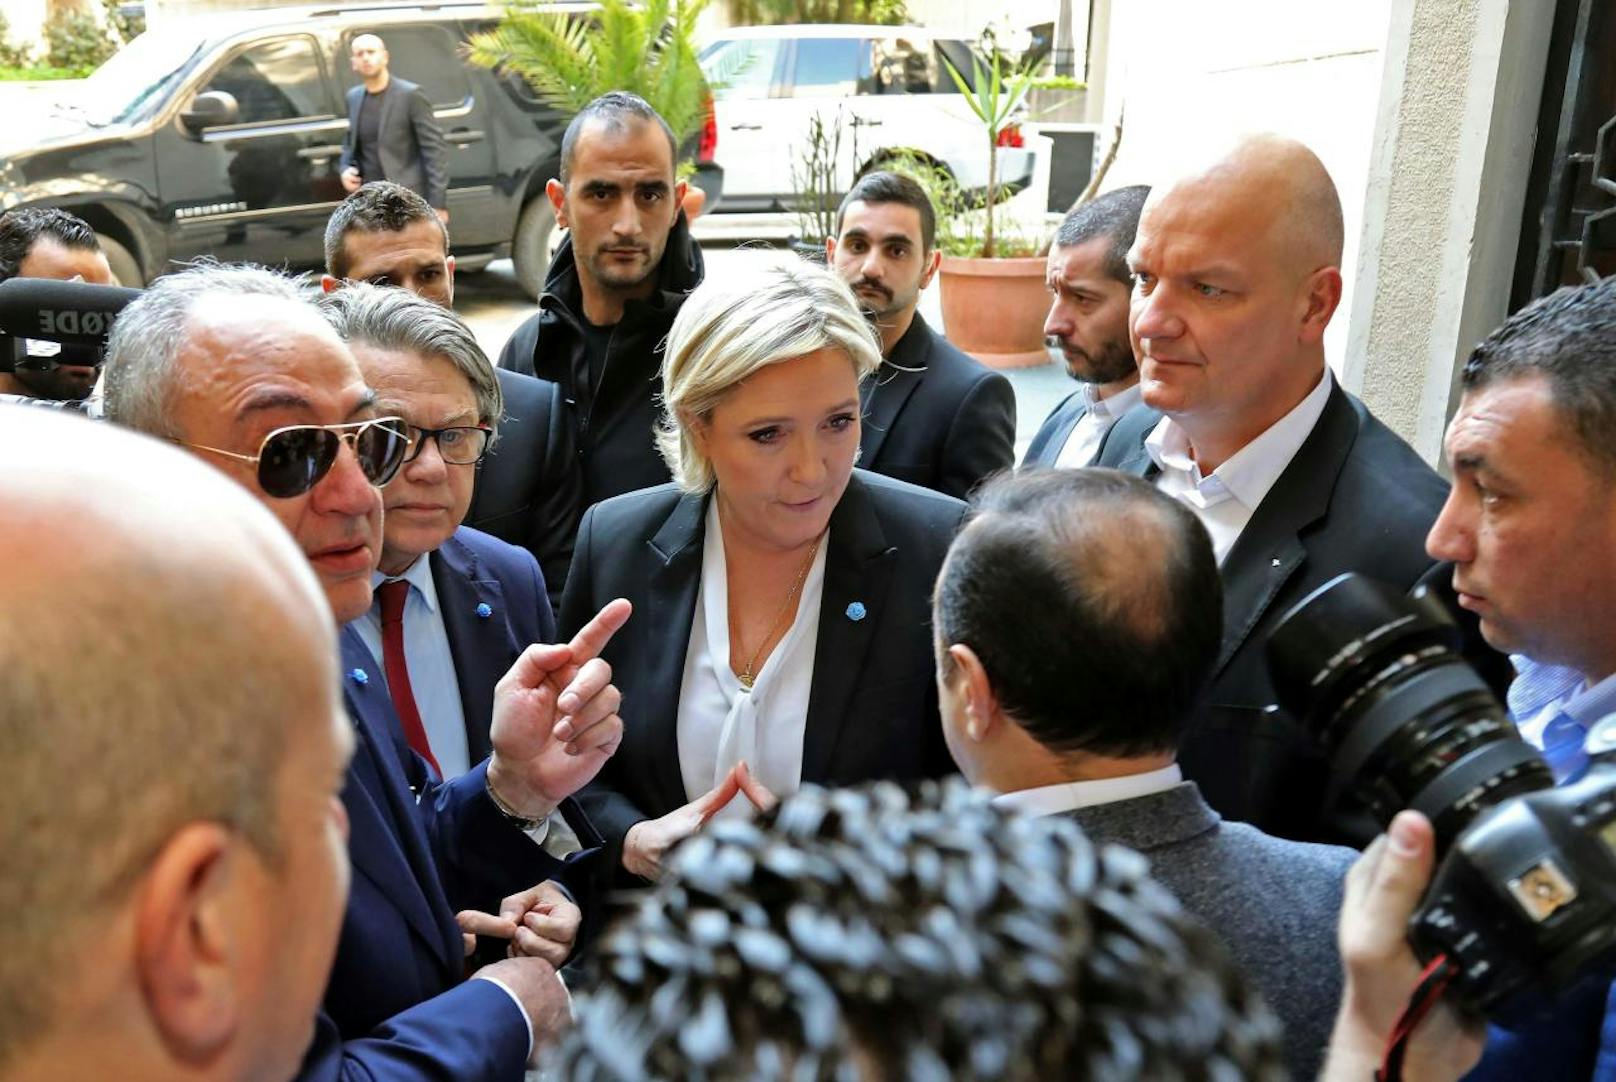 <b>21. Februar 2017: </b>Die Chefin des rechtspopulistischen französischen "Front National", <b>Marine Le Pen</b>, weilte Ende Februar im Libanon. Als ein Mitarbeiter des dortigen Großmuftis ihr vor dem Treffen ein <b>Kopftuch </b>reichen wollte, lehnte Le Pen ab. Nach einem kurzen Gespräch ging sie wieder und verzichtete auf das Treffen.

<b>Mehr Infos: </b> <a href="https://www.heute.at/welt/news/story/18784026">Le Pen lehnt Kopftuch ab - und geht</a>